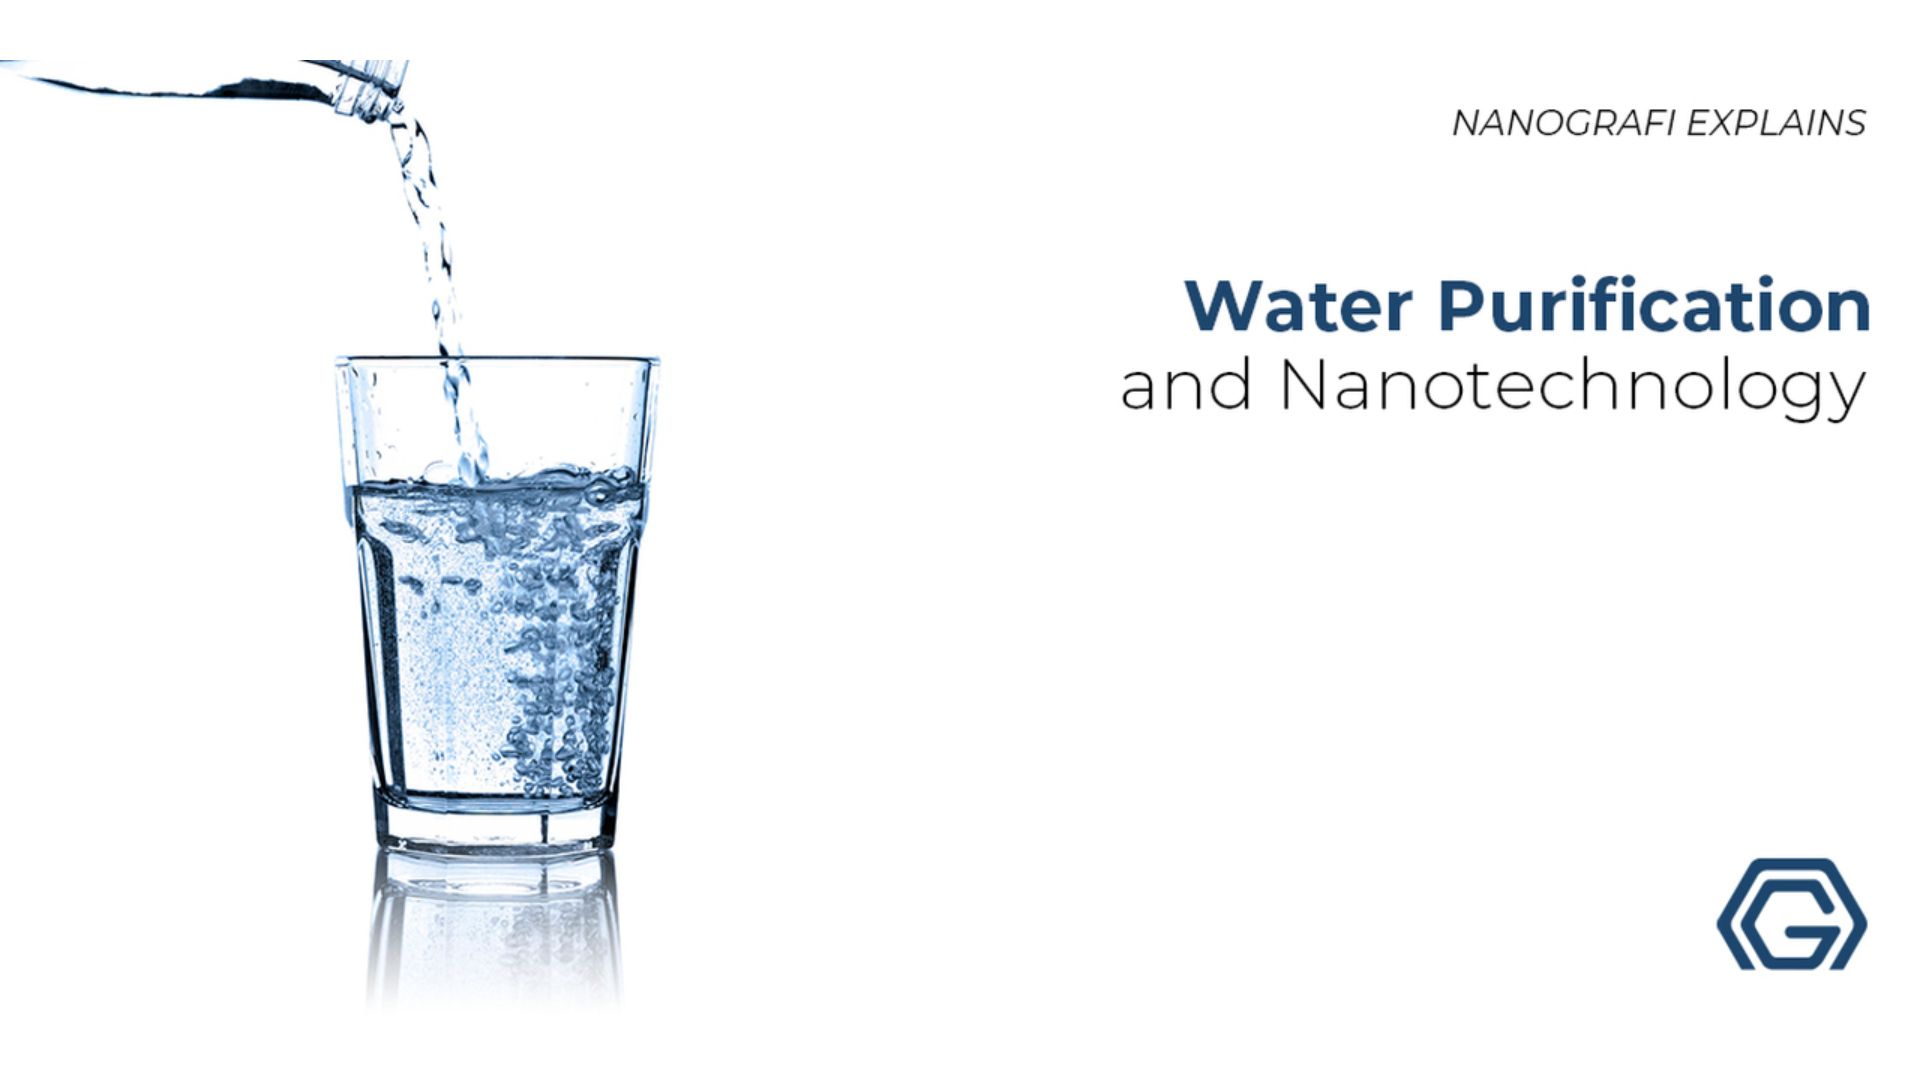 Water purification and nanotechnology